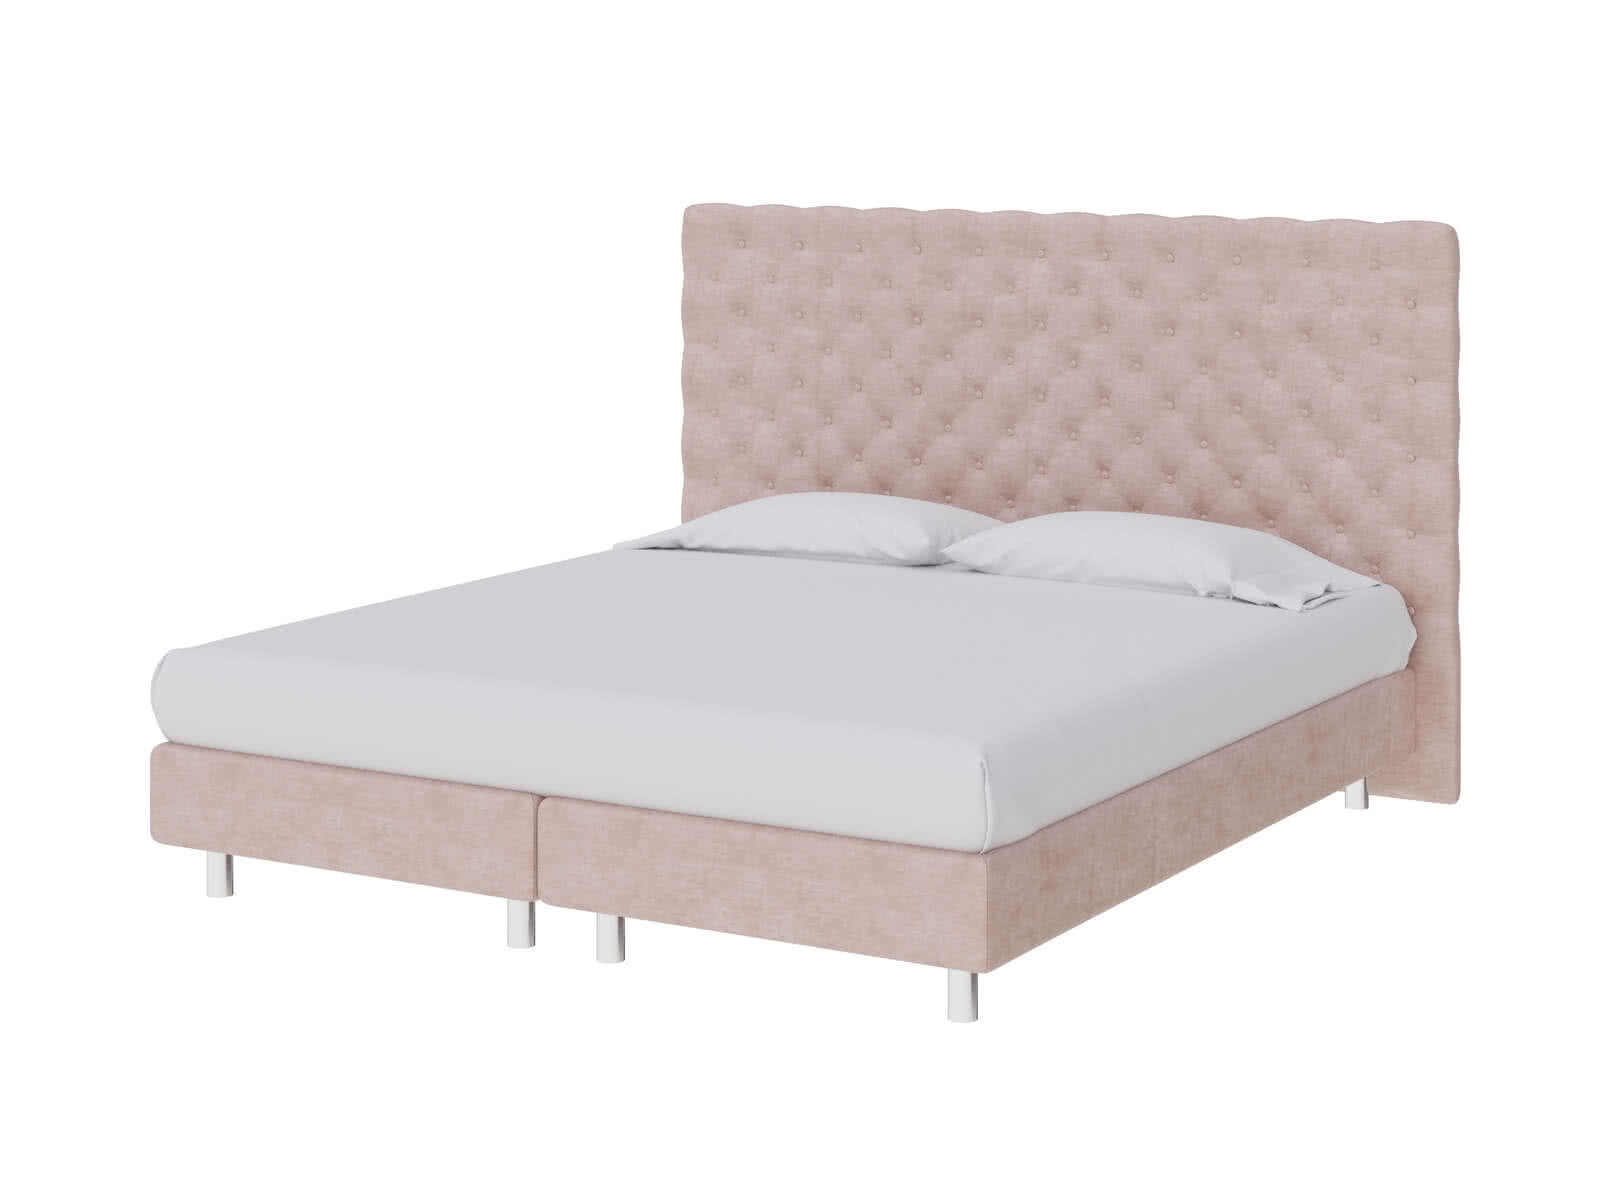 Кровать ProSon Europe Paris Elite 120 х 200 см Лофти Тауп от производителя — цены фабрики, доставка